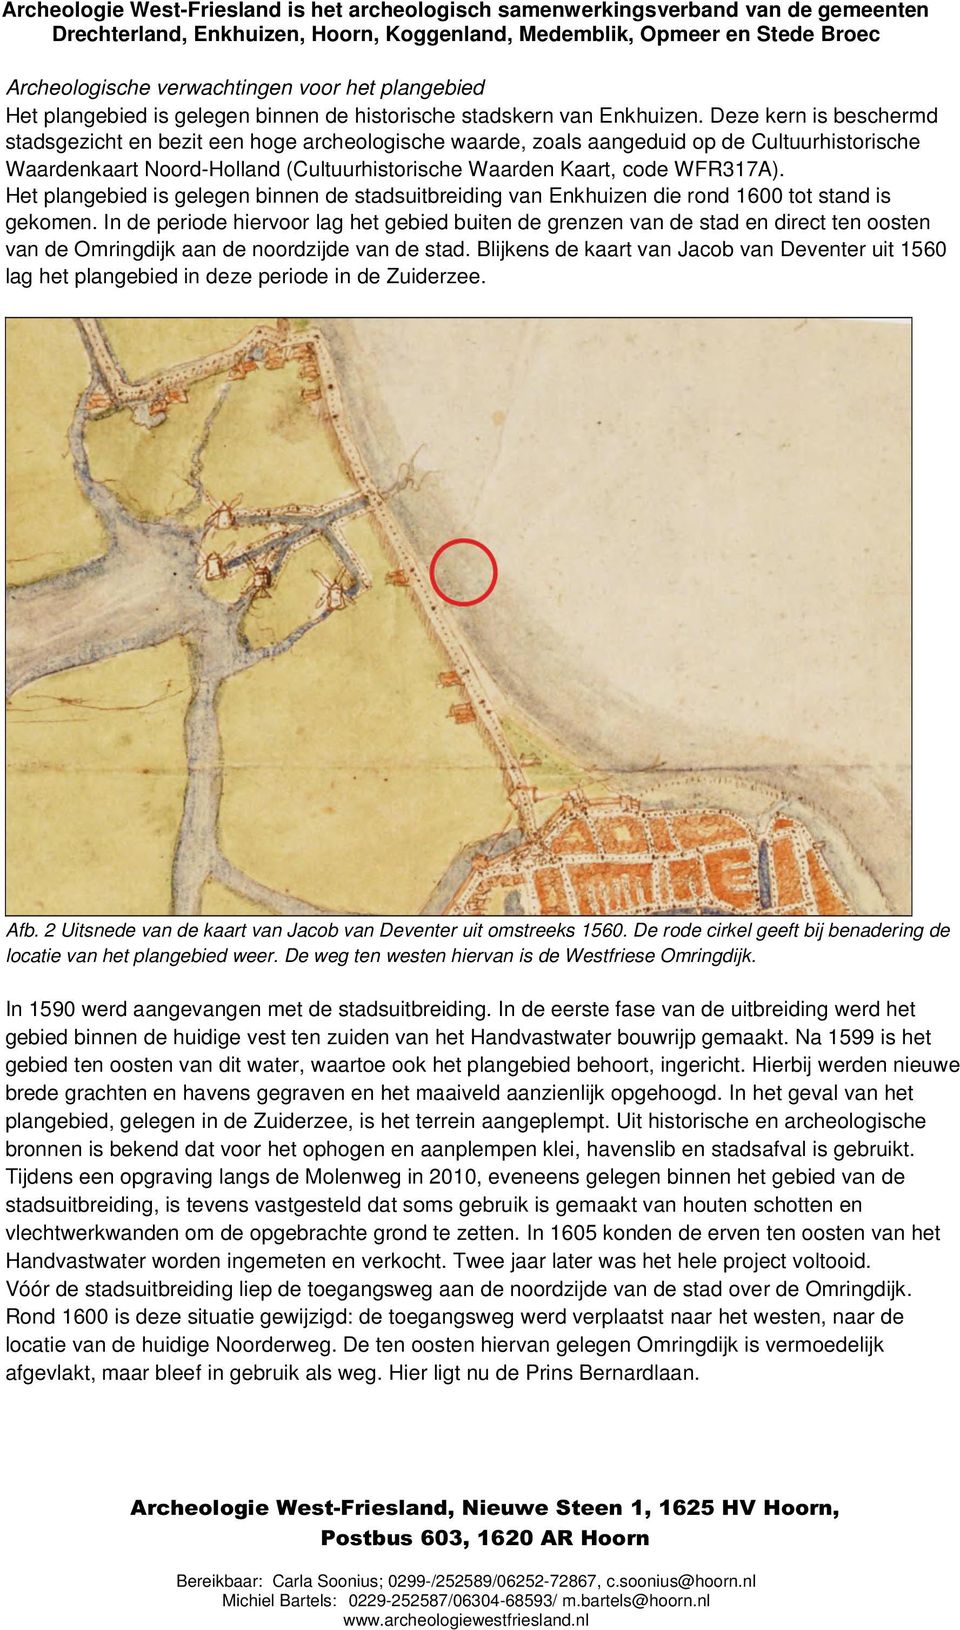 Het plangebied is gelegen binnen de stadsuitbreiding van Enkhuizen die rond 1600 tot stand is gekomen.